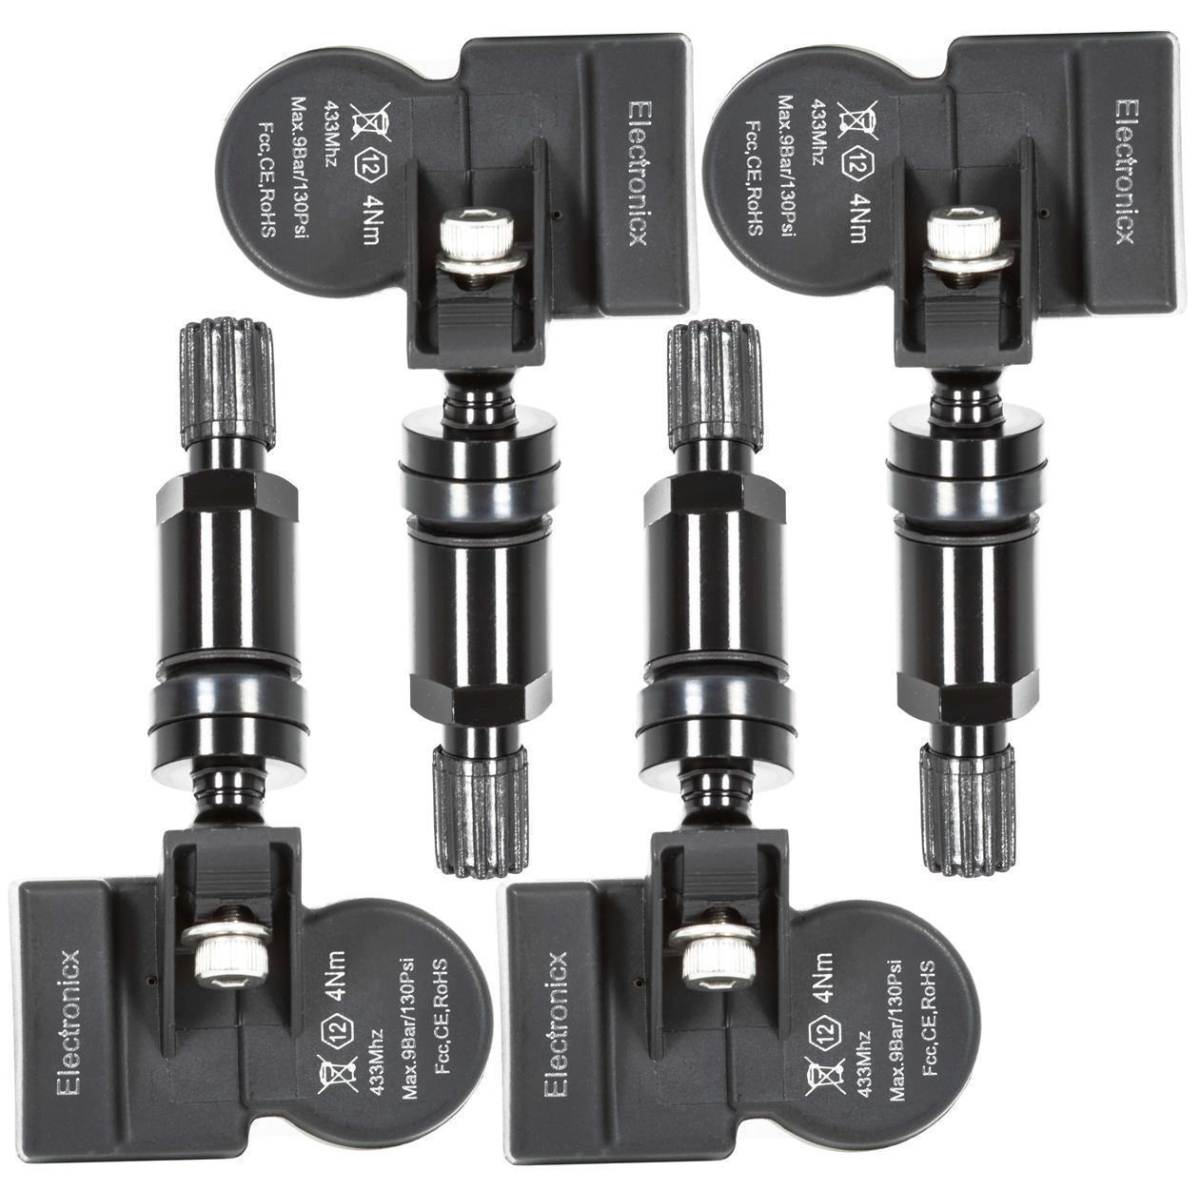 4x TPMS tire pressure sensors metal valve black for Alpina BMW Mini 1 Series 2 Series 3 Series 4 Series i3 i8 M2 M3